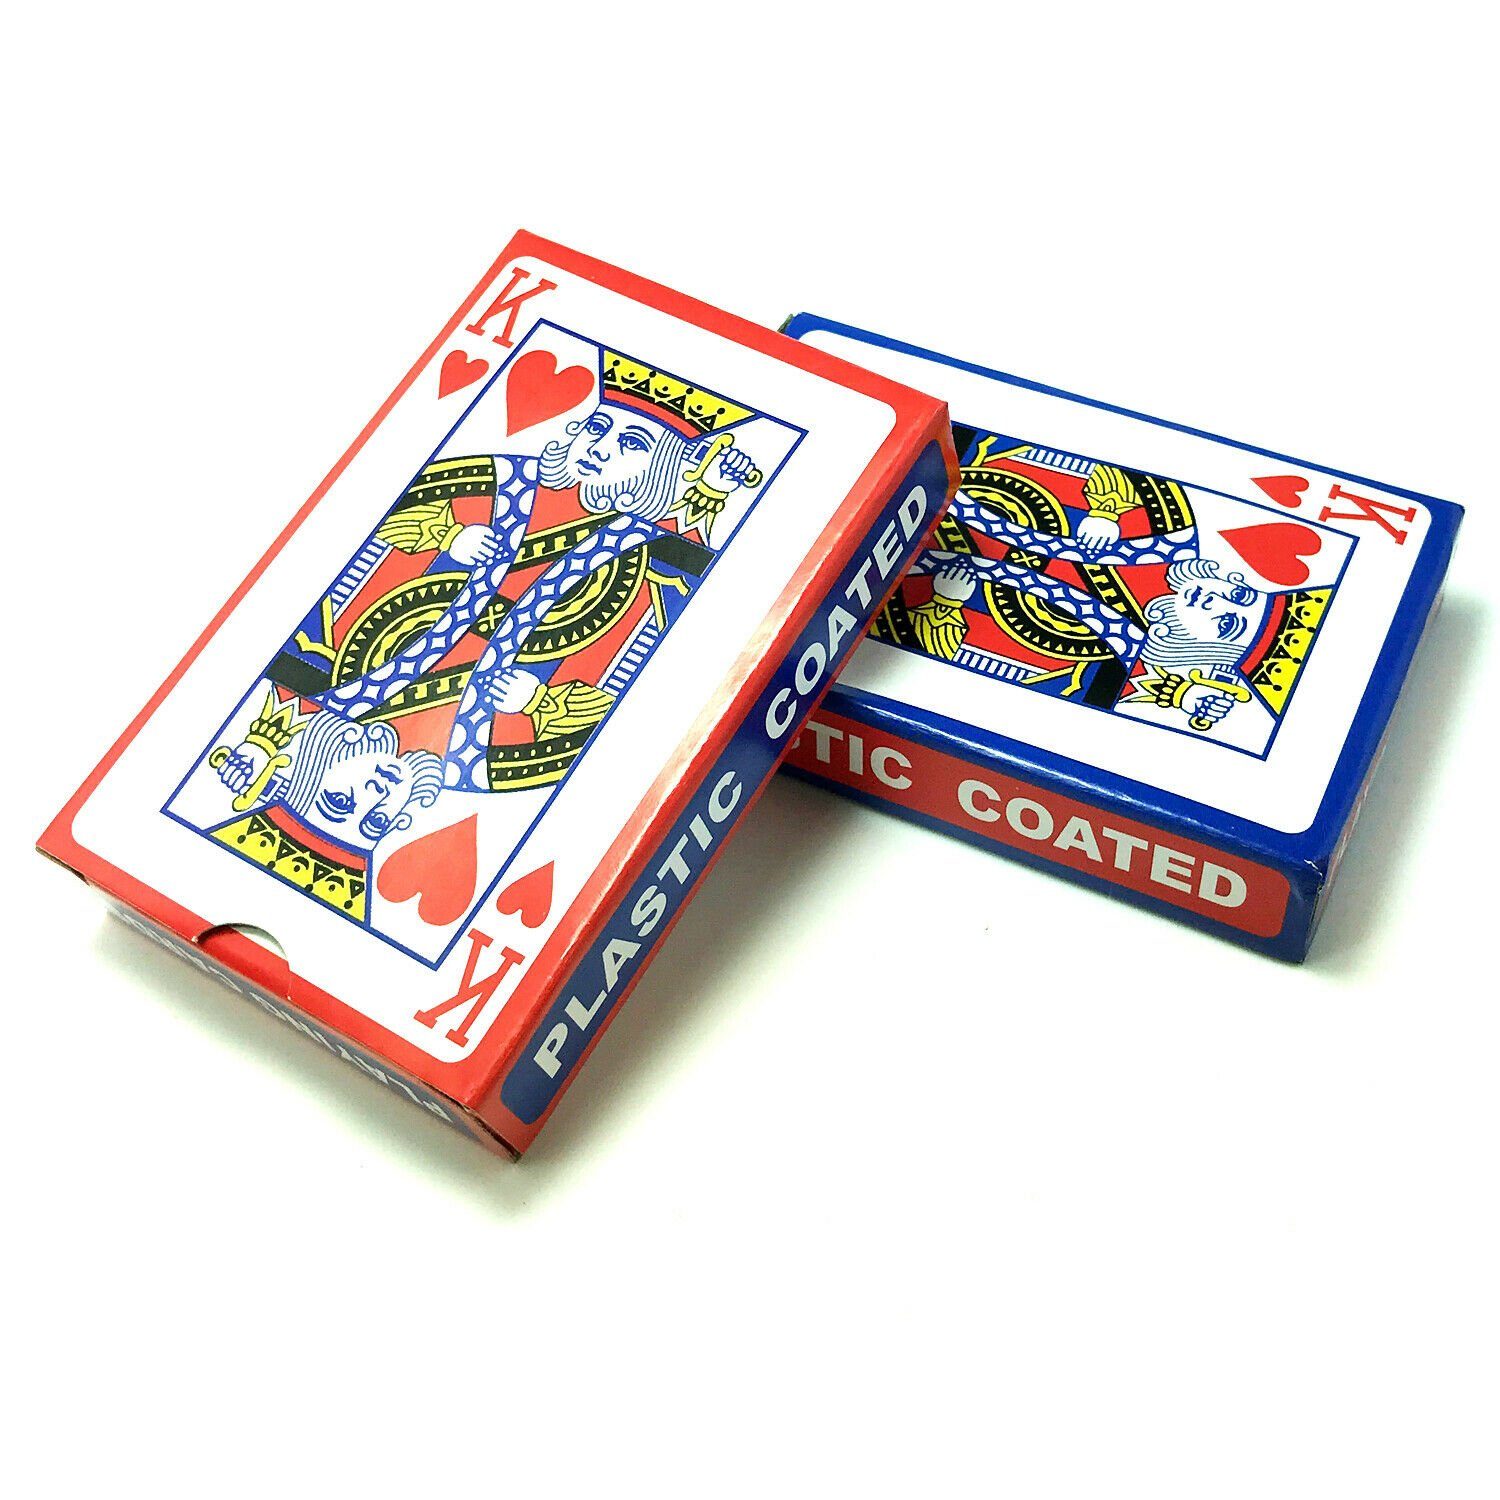 TSB Werk Spielesammlung, 2x 54 Blatt Spielkarten Set (Rot & Blau) Kartenspiel, Poker, Канаста, Bridge, Skat